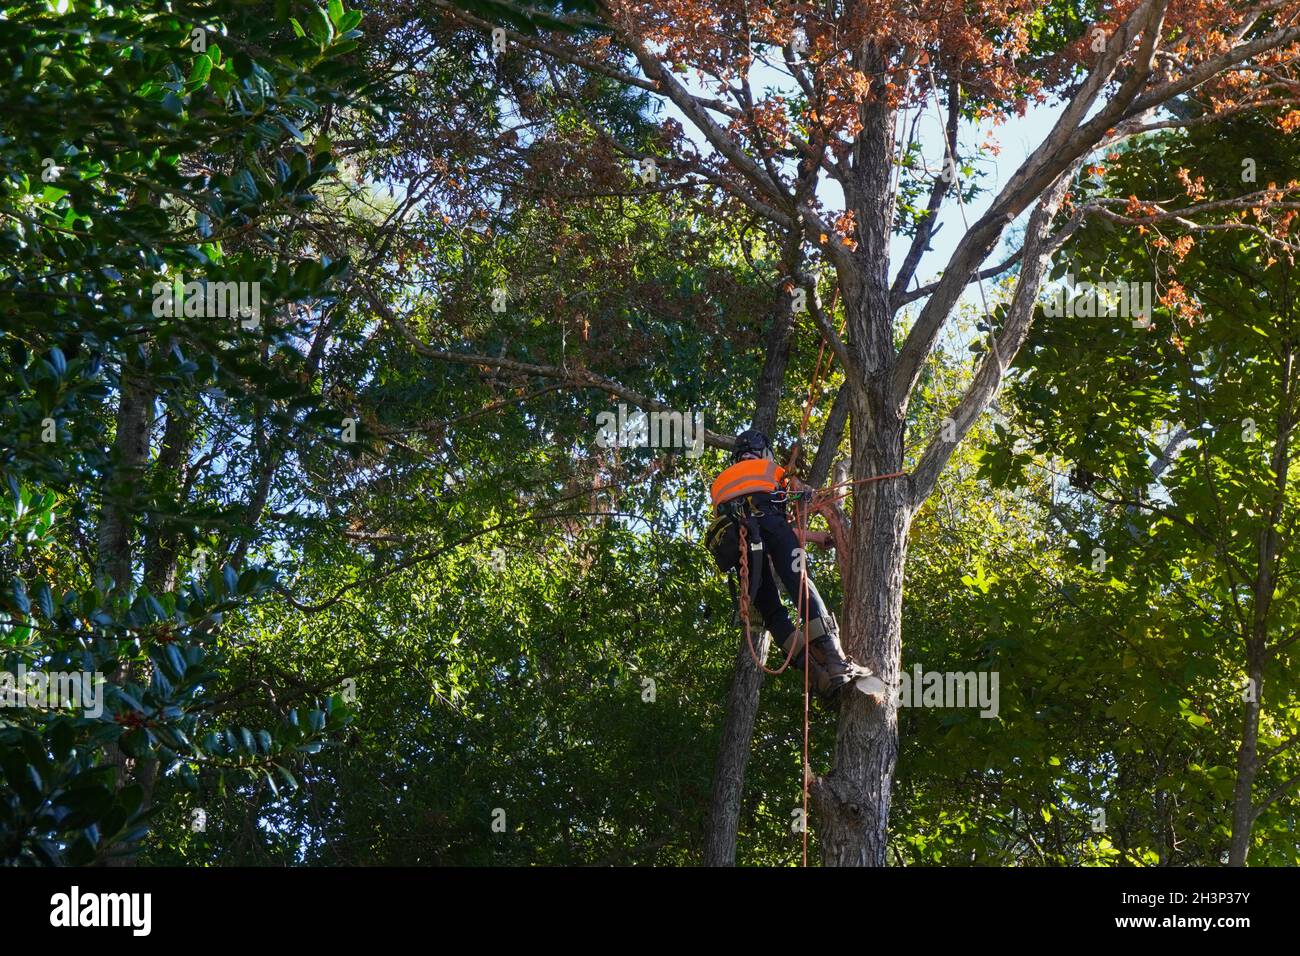 Baumärker, der einen toten Baum klettert, um sich auf die Entfernung des Baumes vorzubereiten Stockfoto